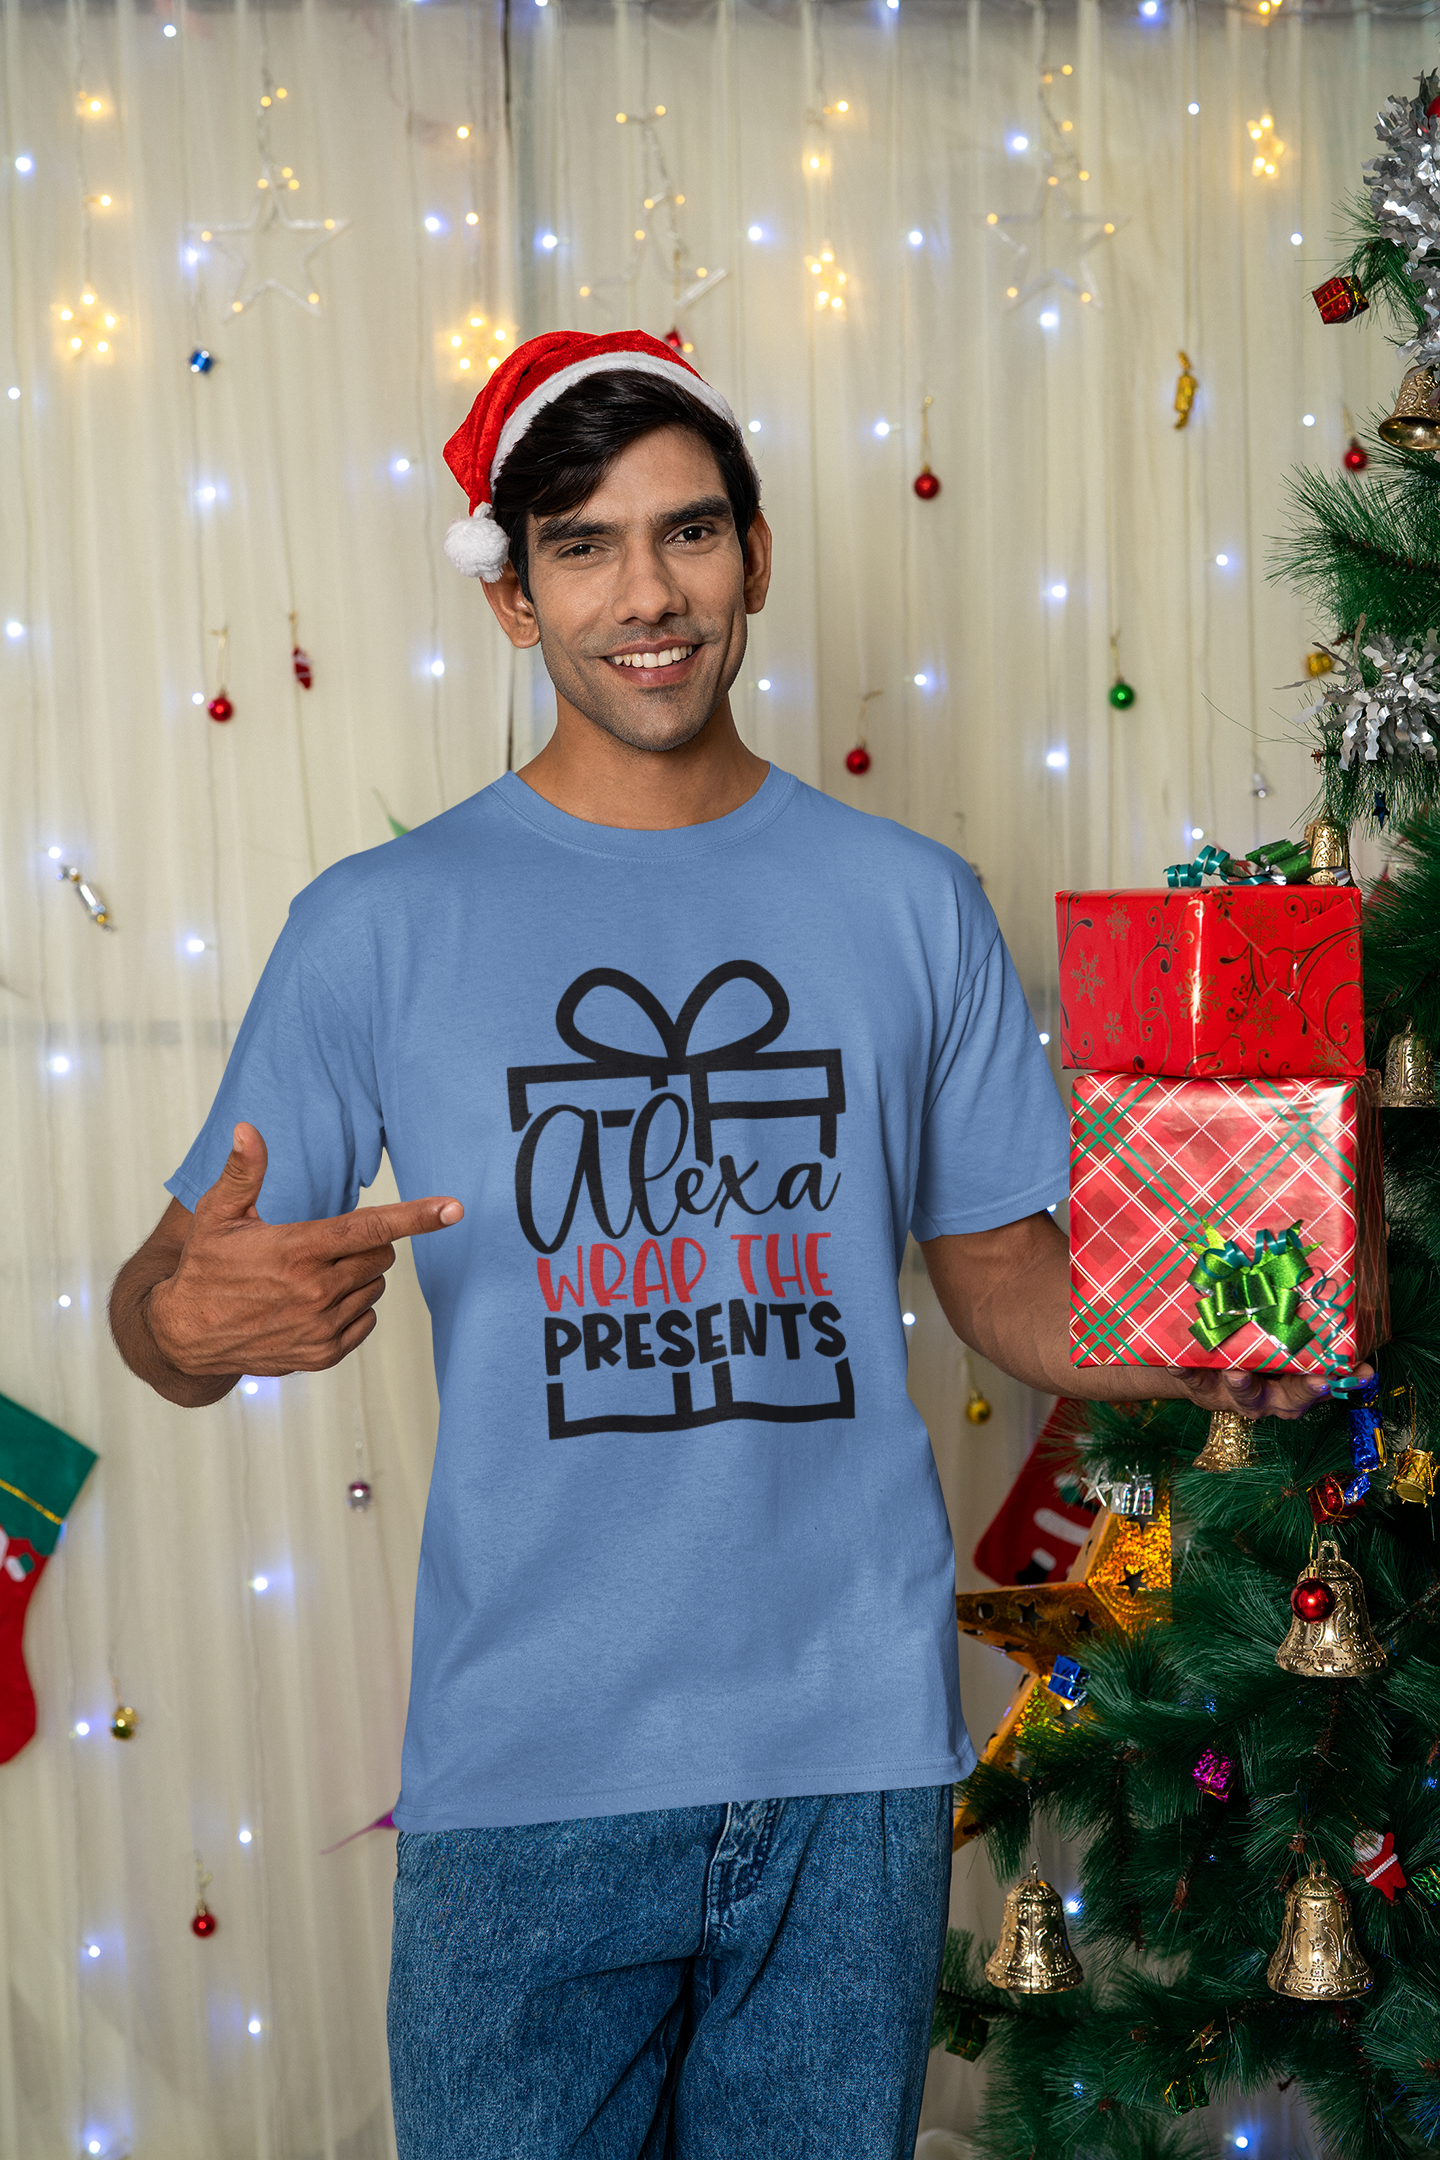 Alexa Wrap the Presents Unisex Garment-Dyed T-shirt